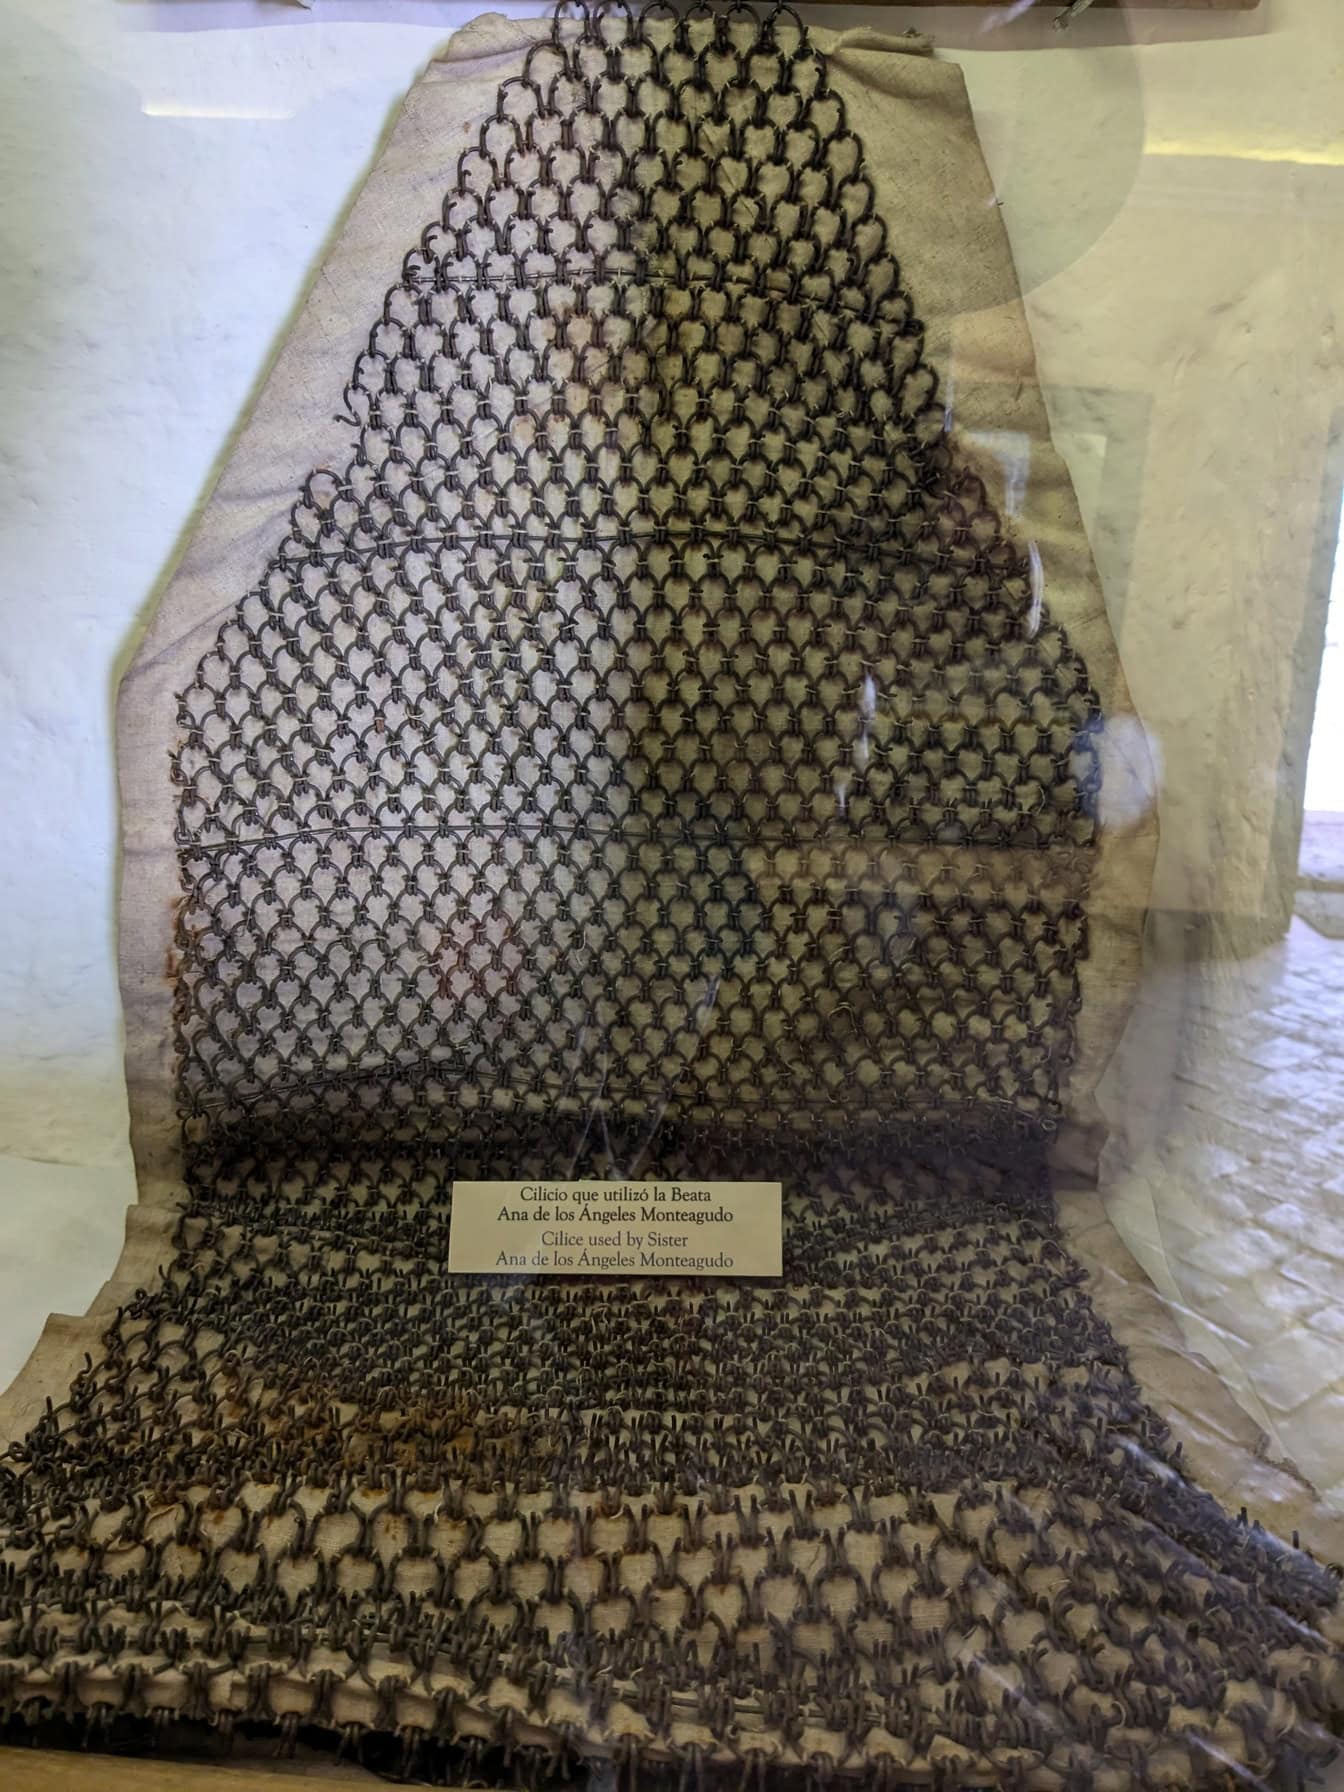 Una prenda hecha de cadenas que fue utilizada por la hermana Ana de los Ángeles Monteagudo, exhibida en un museo en Perú